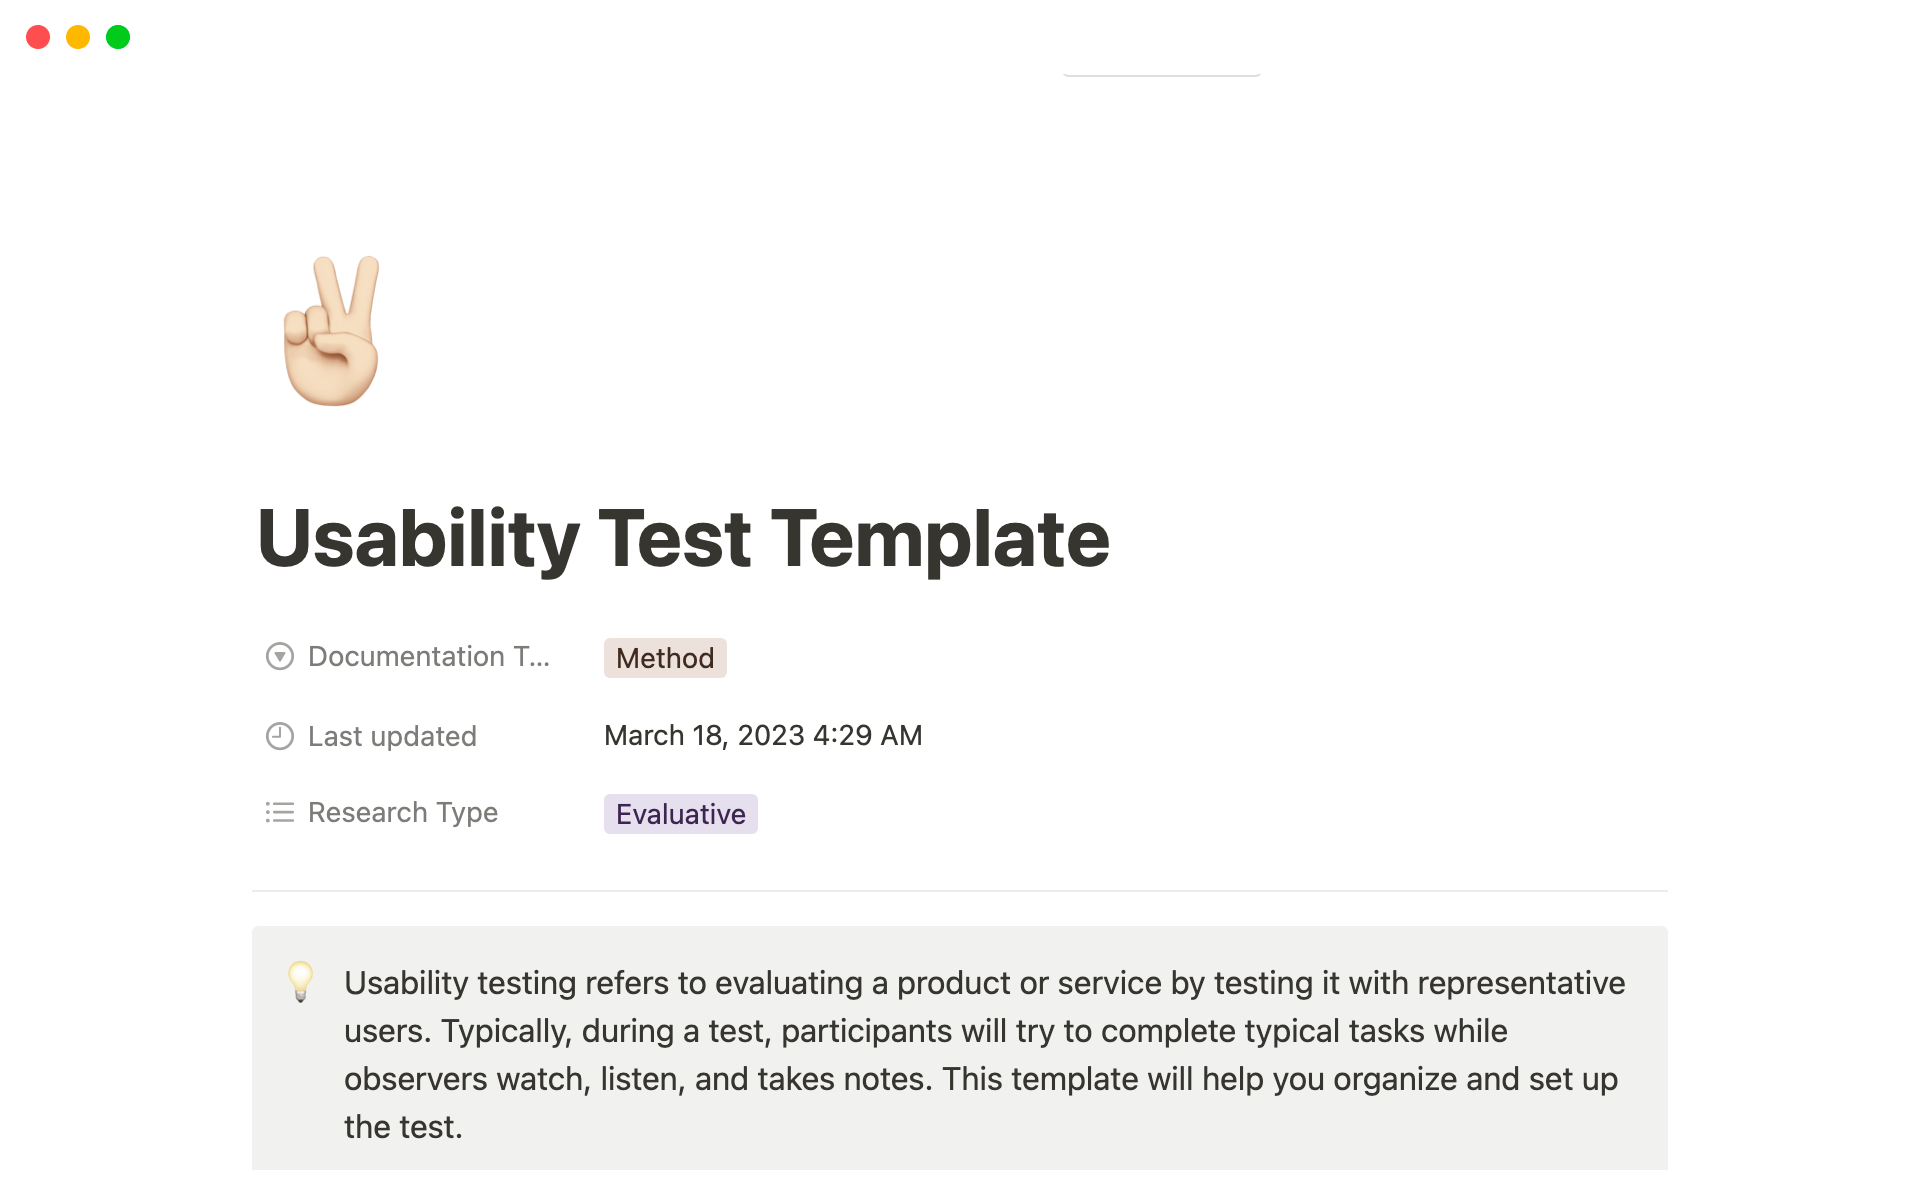 Uma prévia do modelo para Usability Test Template